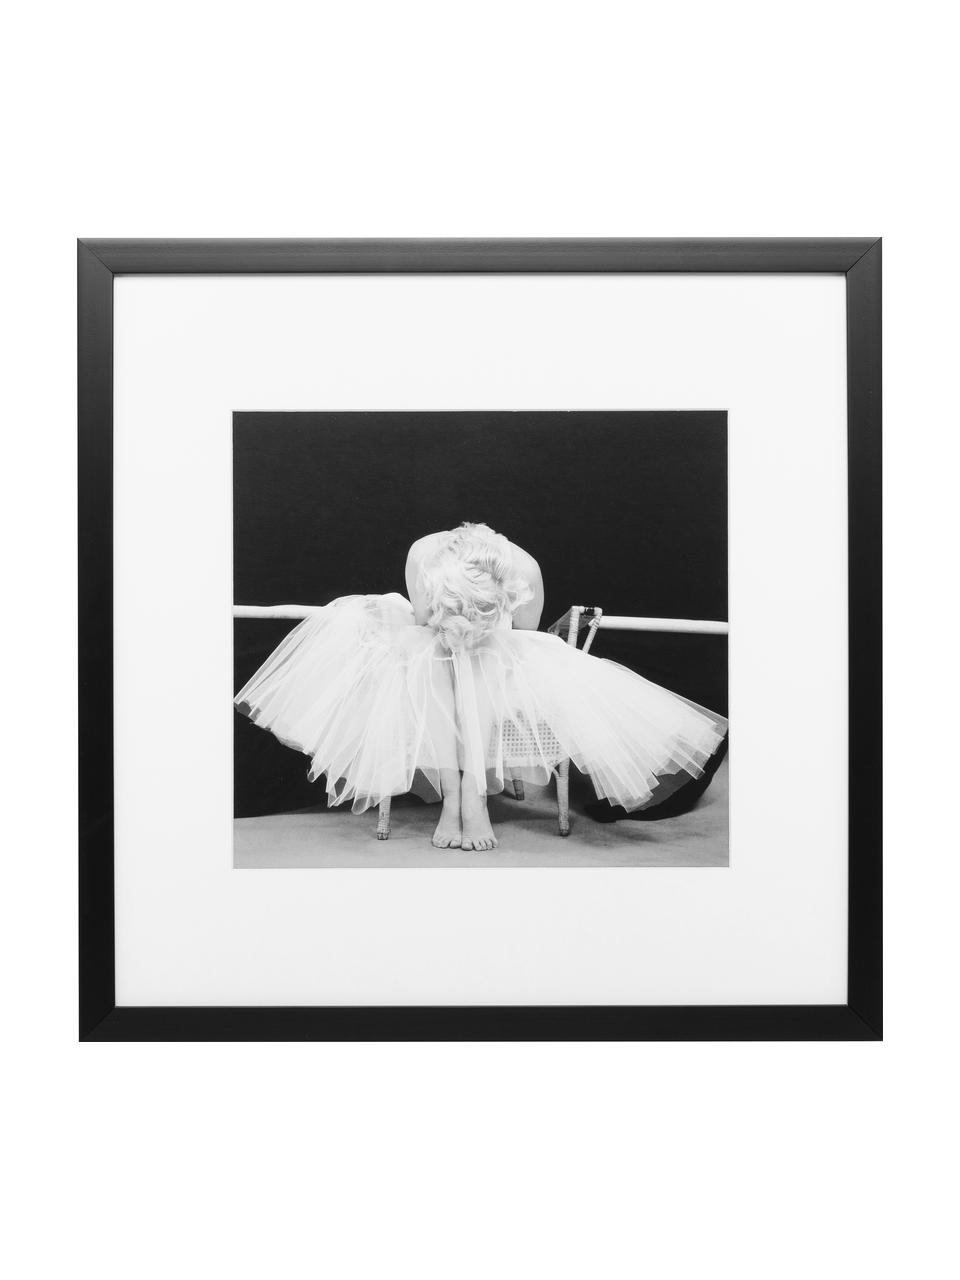 Gerahmter Digitaldruck Ballerina, Bild: Digitaldruck, Rahmen: Kunststoff, Front: Glas, Bild: Schwarz, Weiss Rahmen: Schwarz, B 40 x H 40 cm